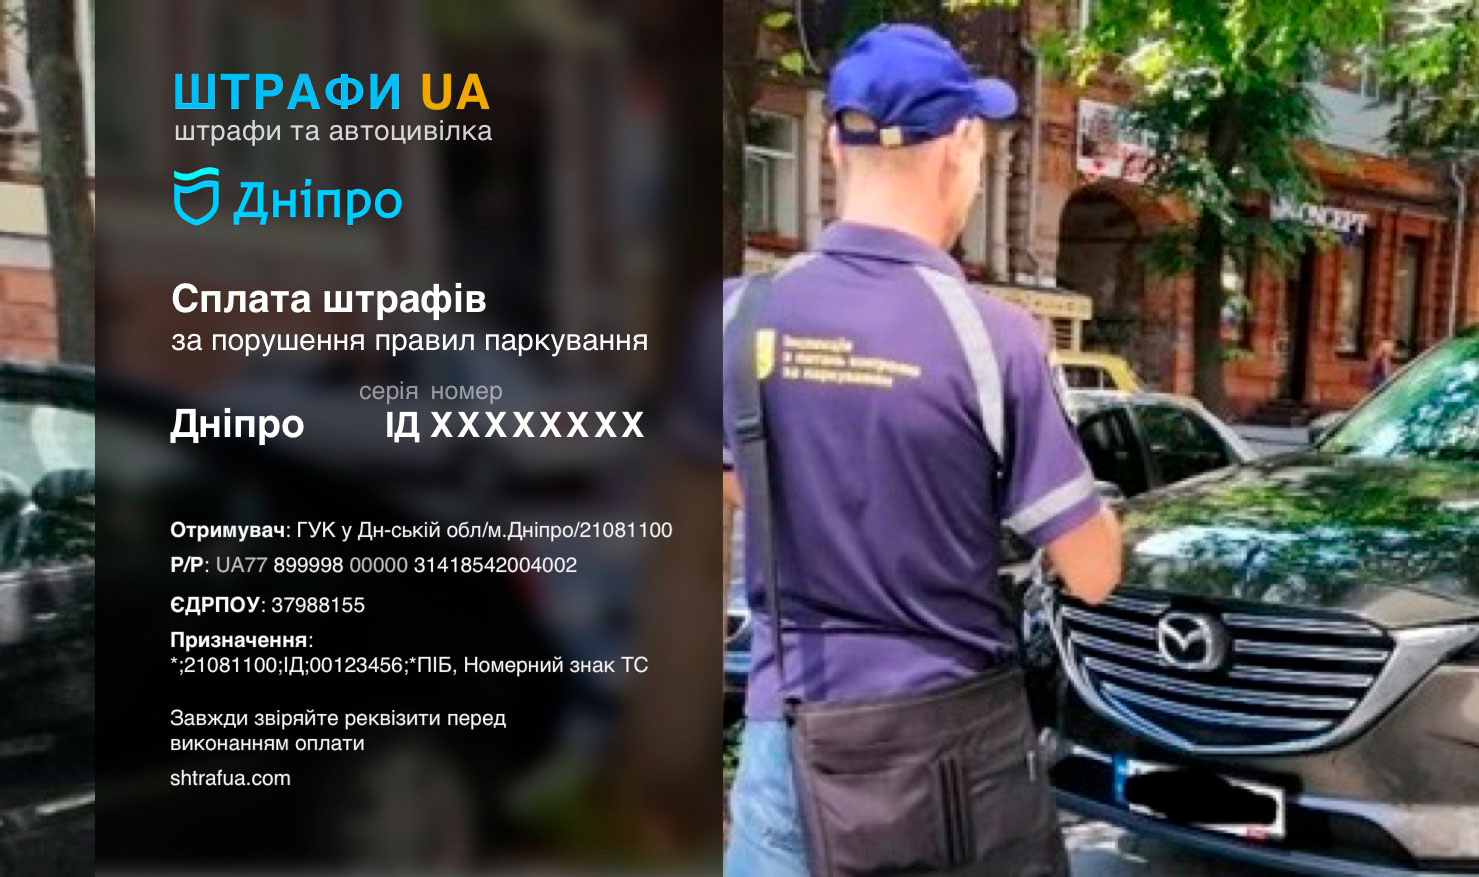 Сплата штрафу за паркування Дніпро